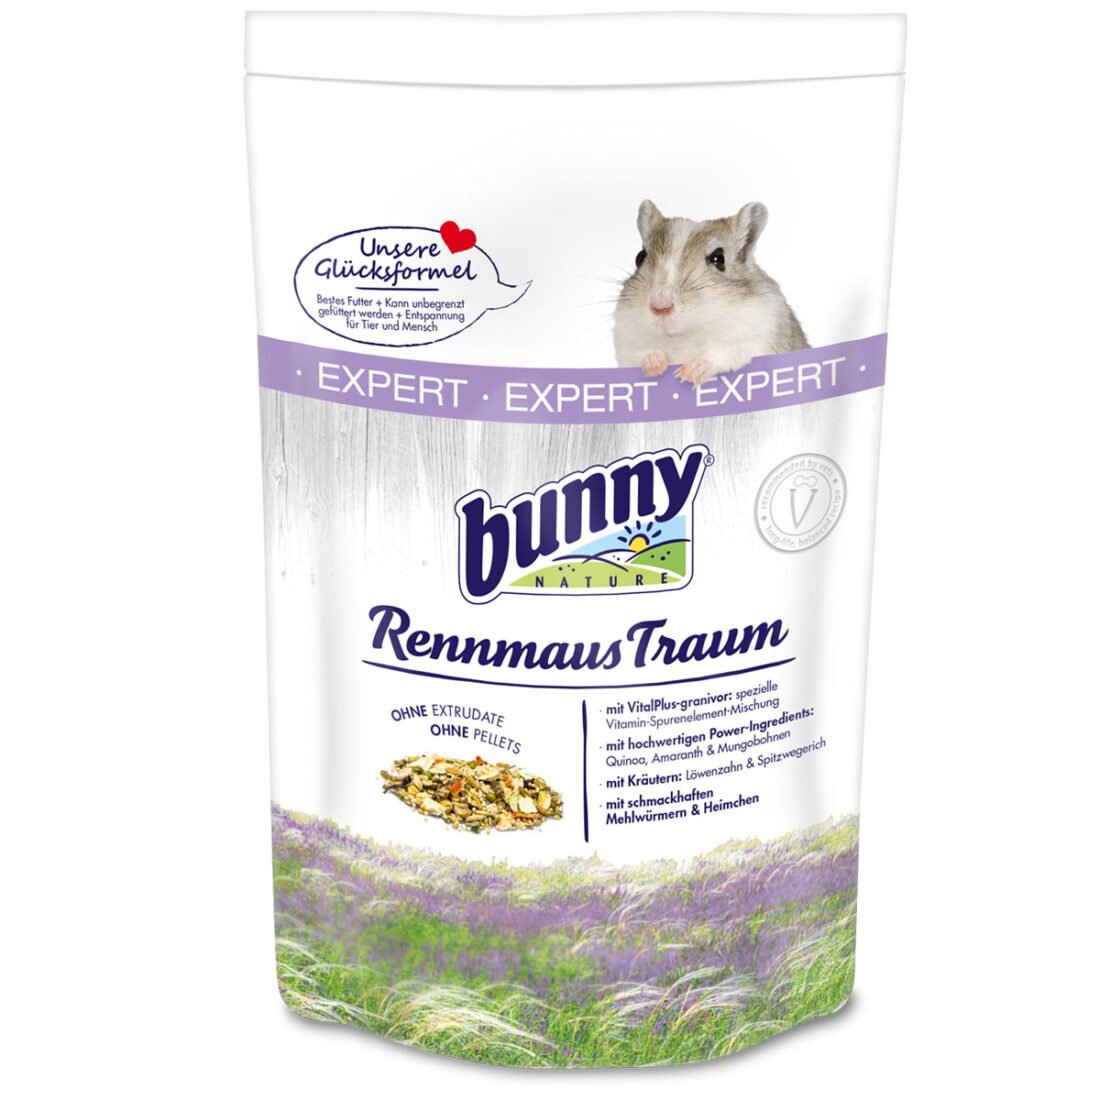 Bunny Nature RennmausTraum EXPERT 3